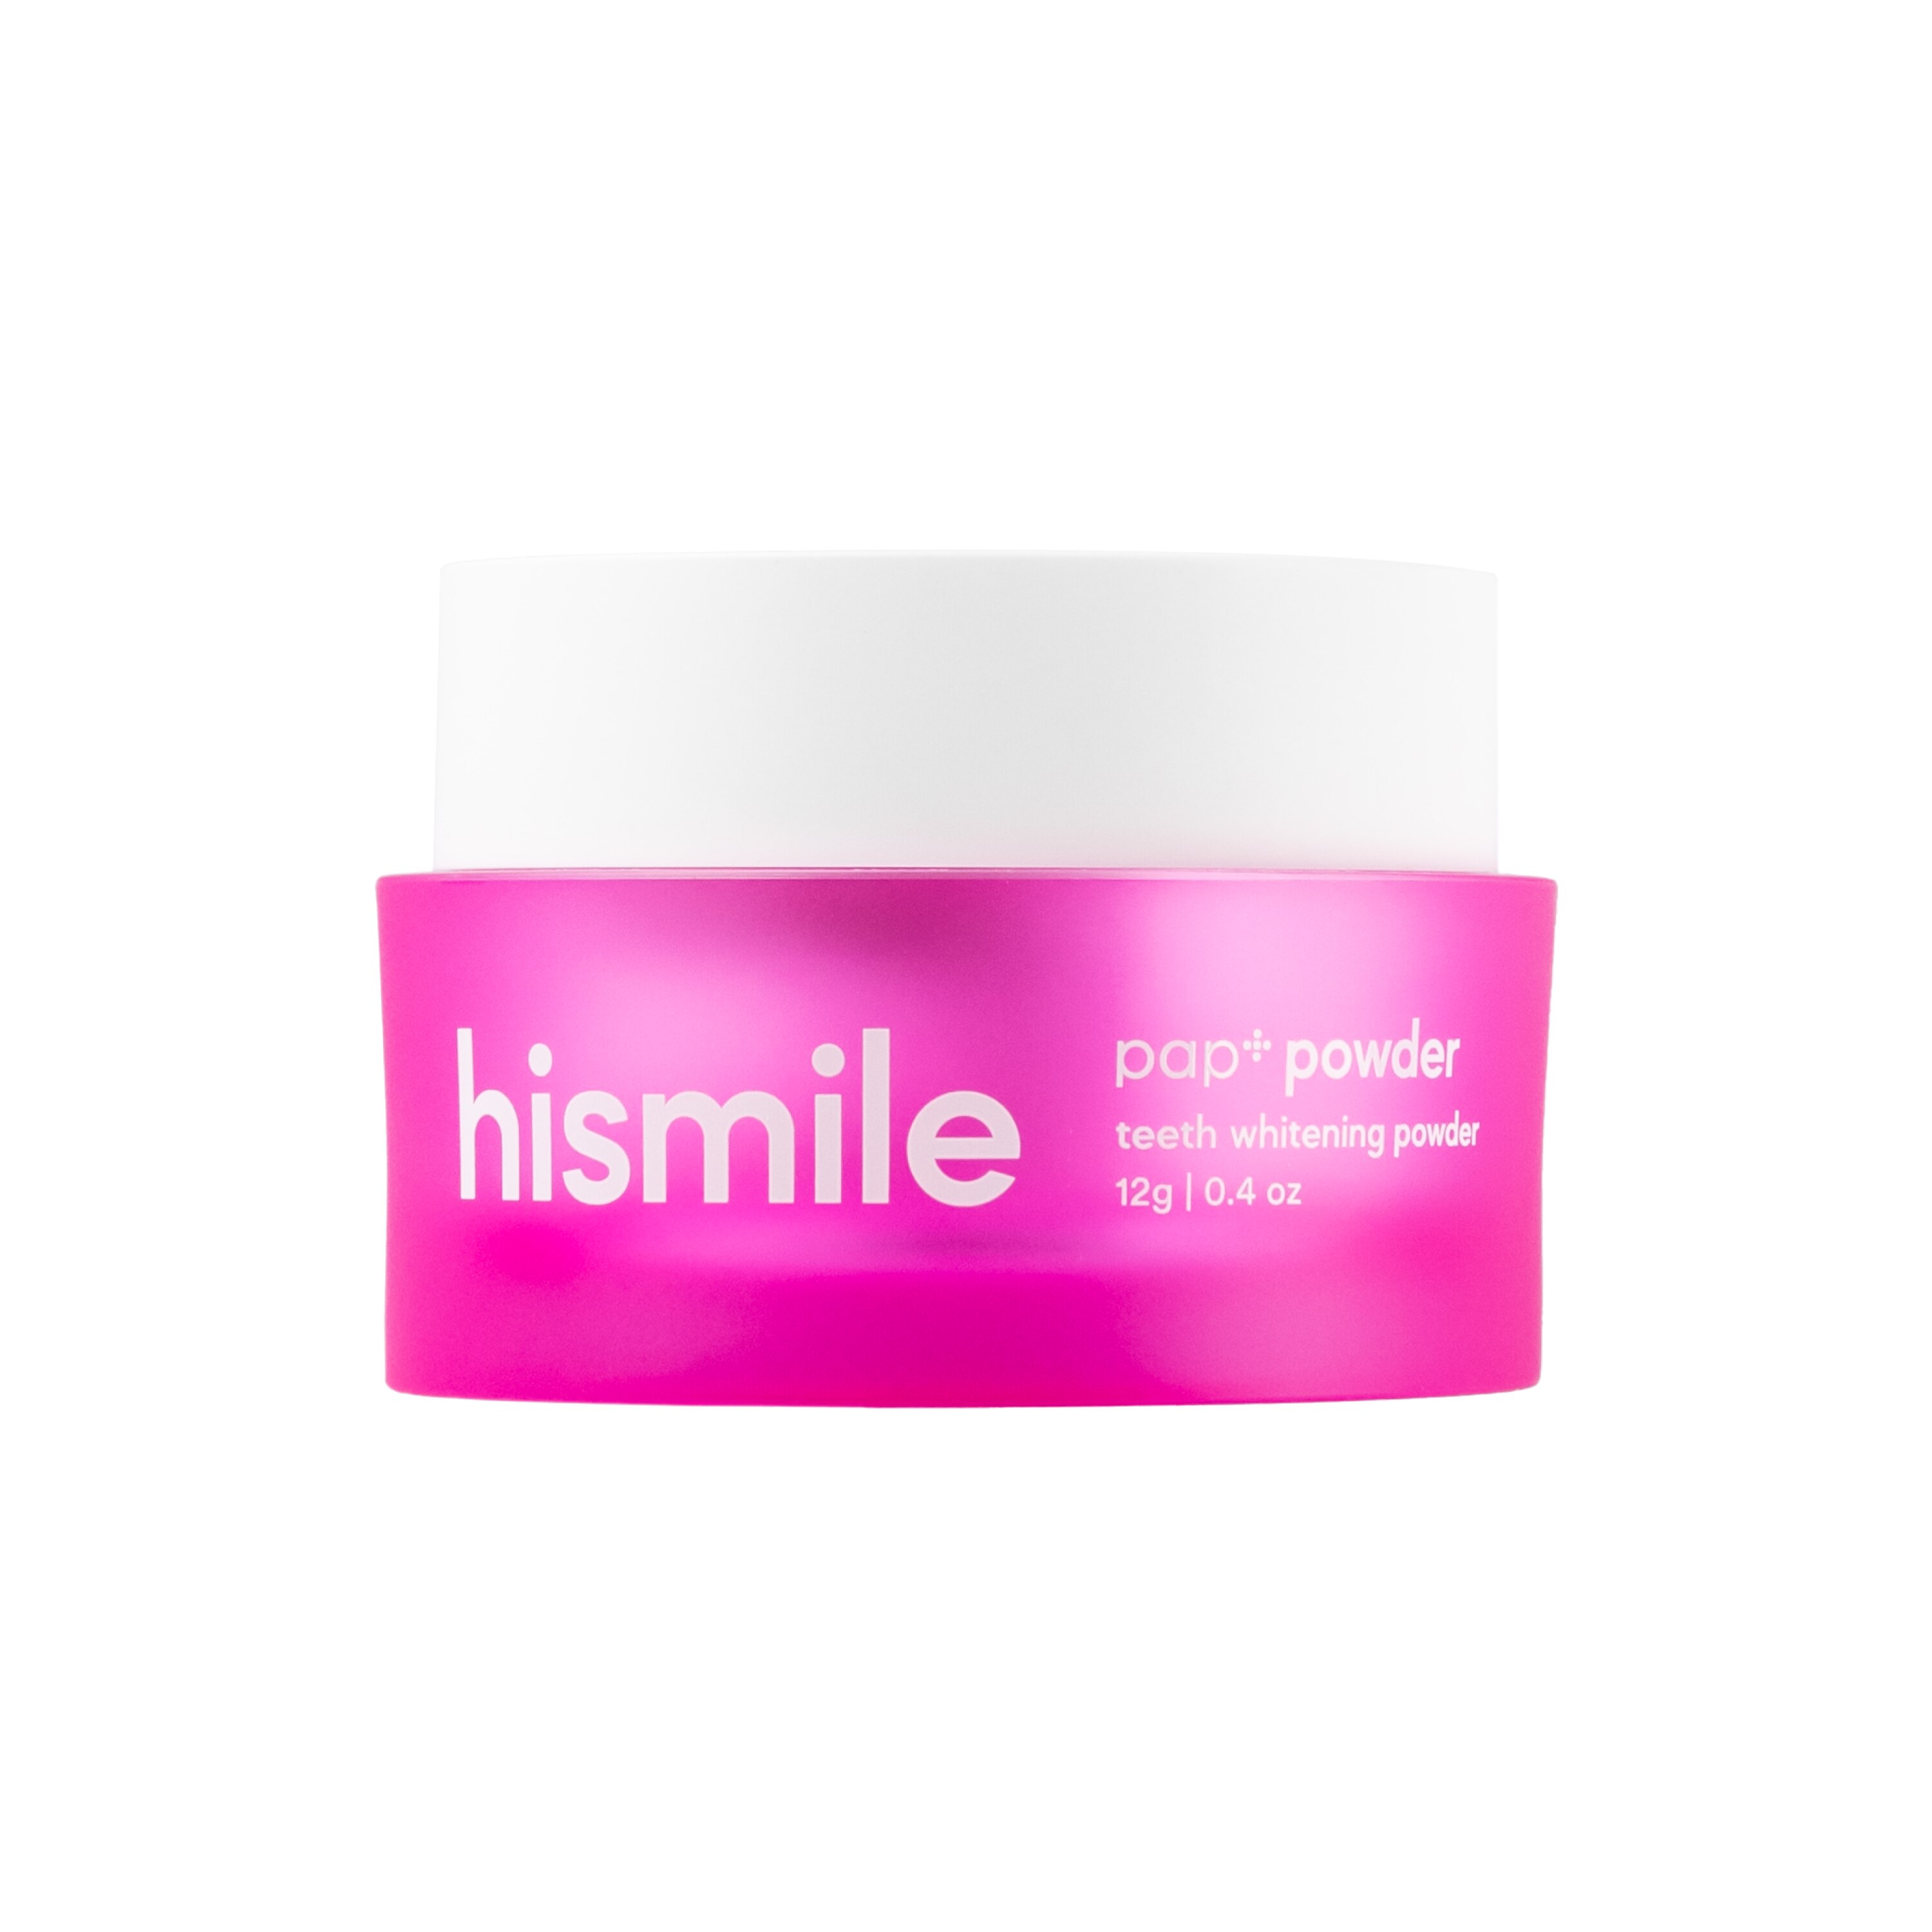 Hismile PAP+ Teeth Whitening Powder, 0.4 Oz , CVS